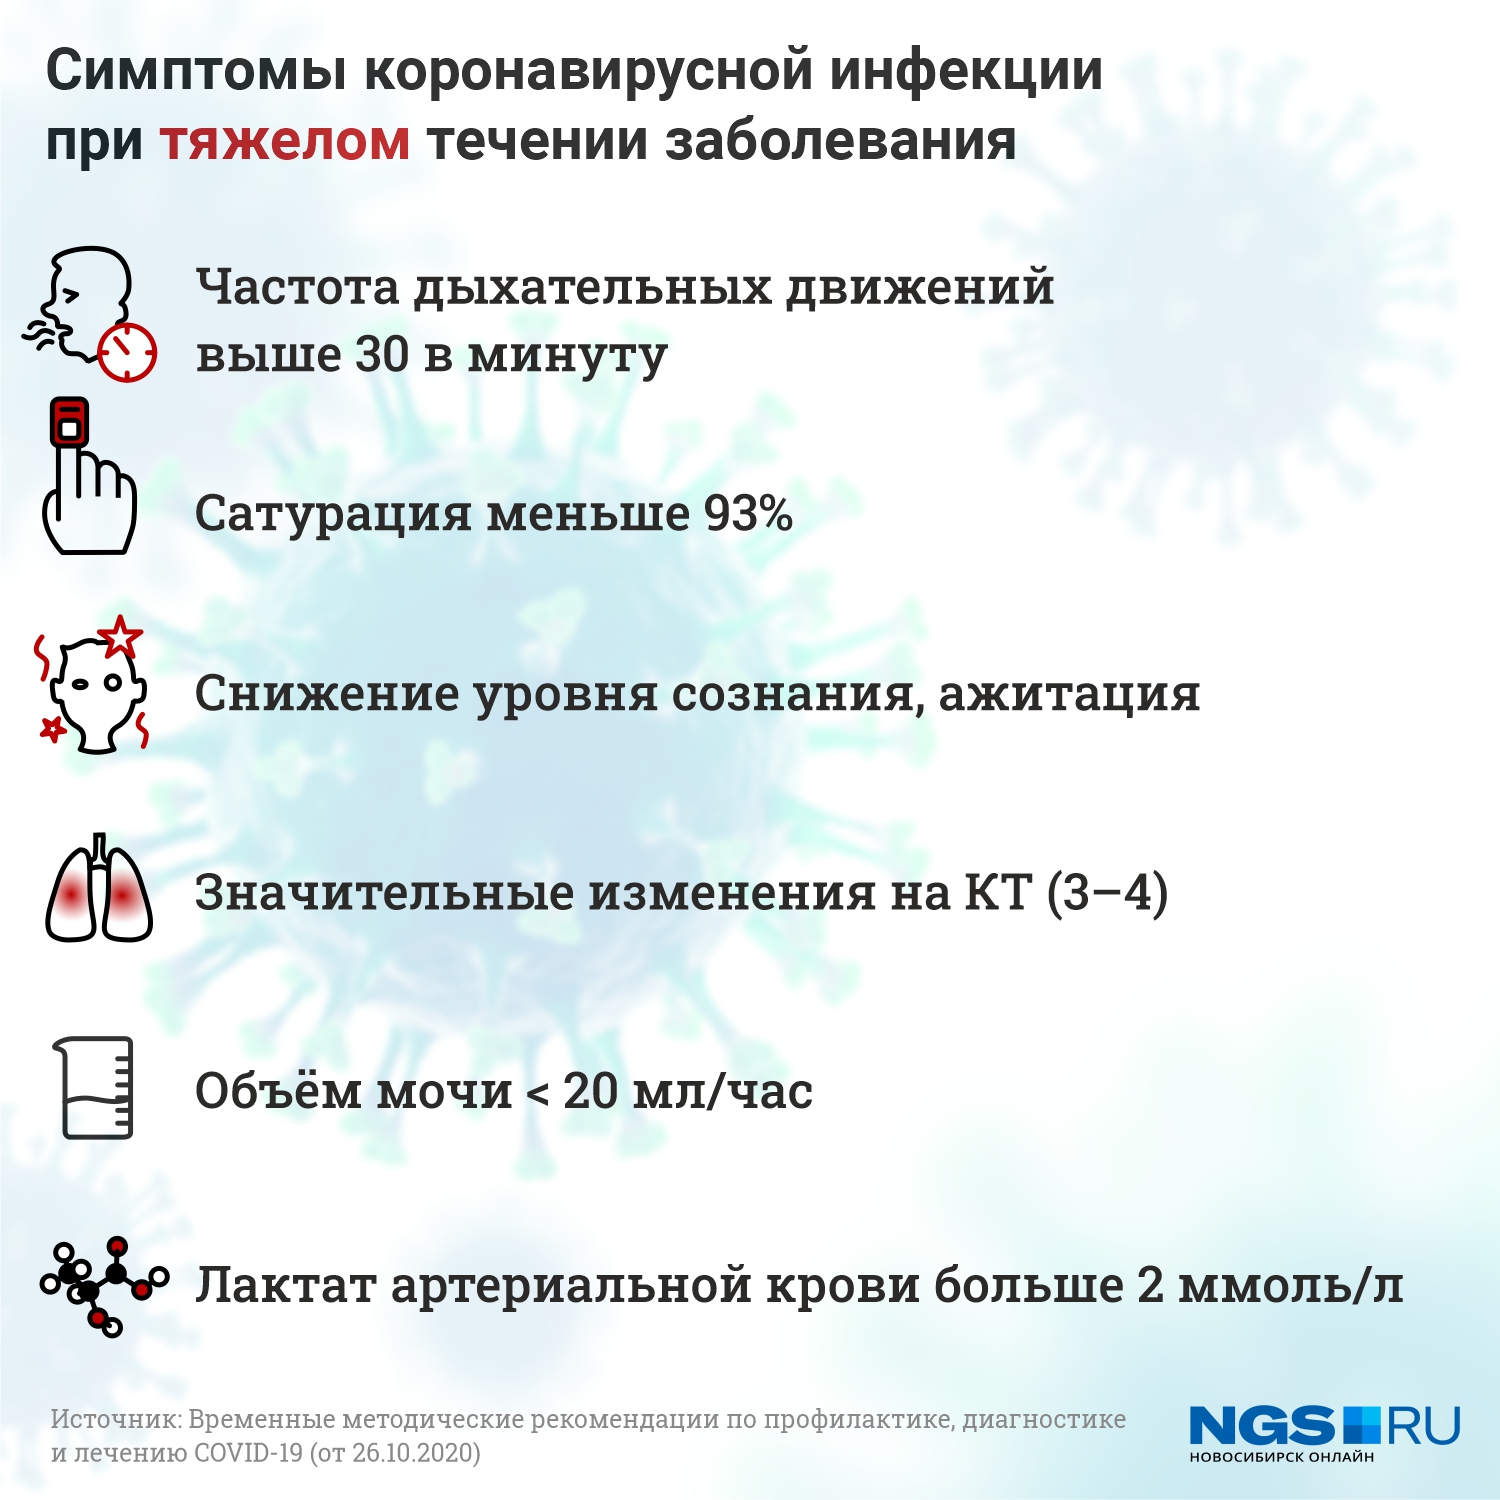 О том, где в Новосибирске <a href="https://ngs.ru/text/health/2020/09/22/69474673/" target="_blank" class="_">сделать КТ,</a> мы рассказывали здесь, но не всем нужно это <a href="https://ngs.ru/text/health/2020/10/22/69512623/" target="_blank" class="_">исследование</a>